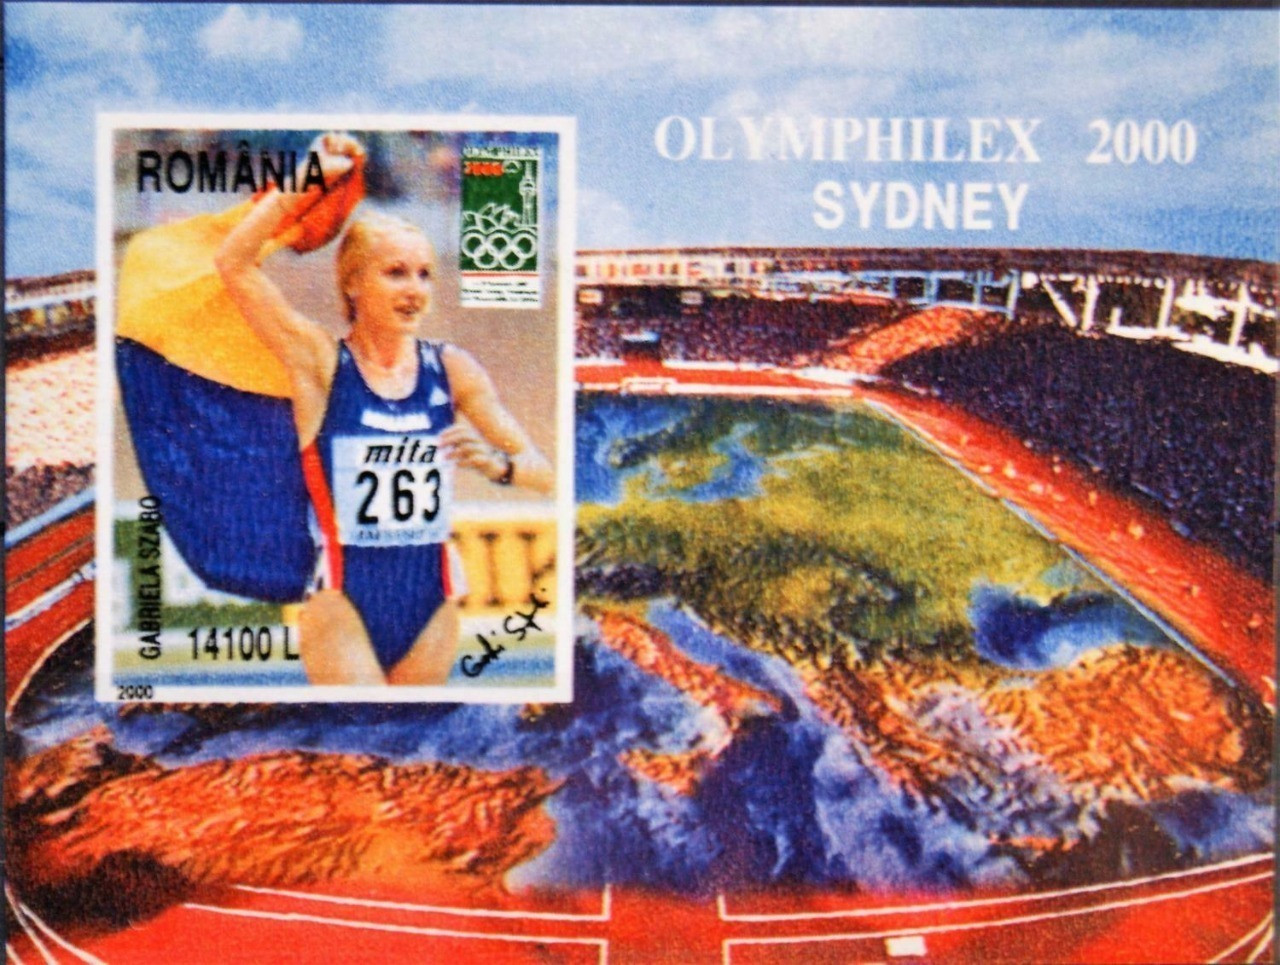 Romania Olympic Games,  Olymphilex 2000 Sydney